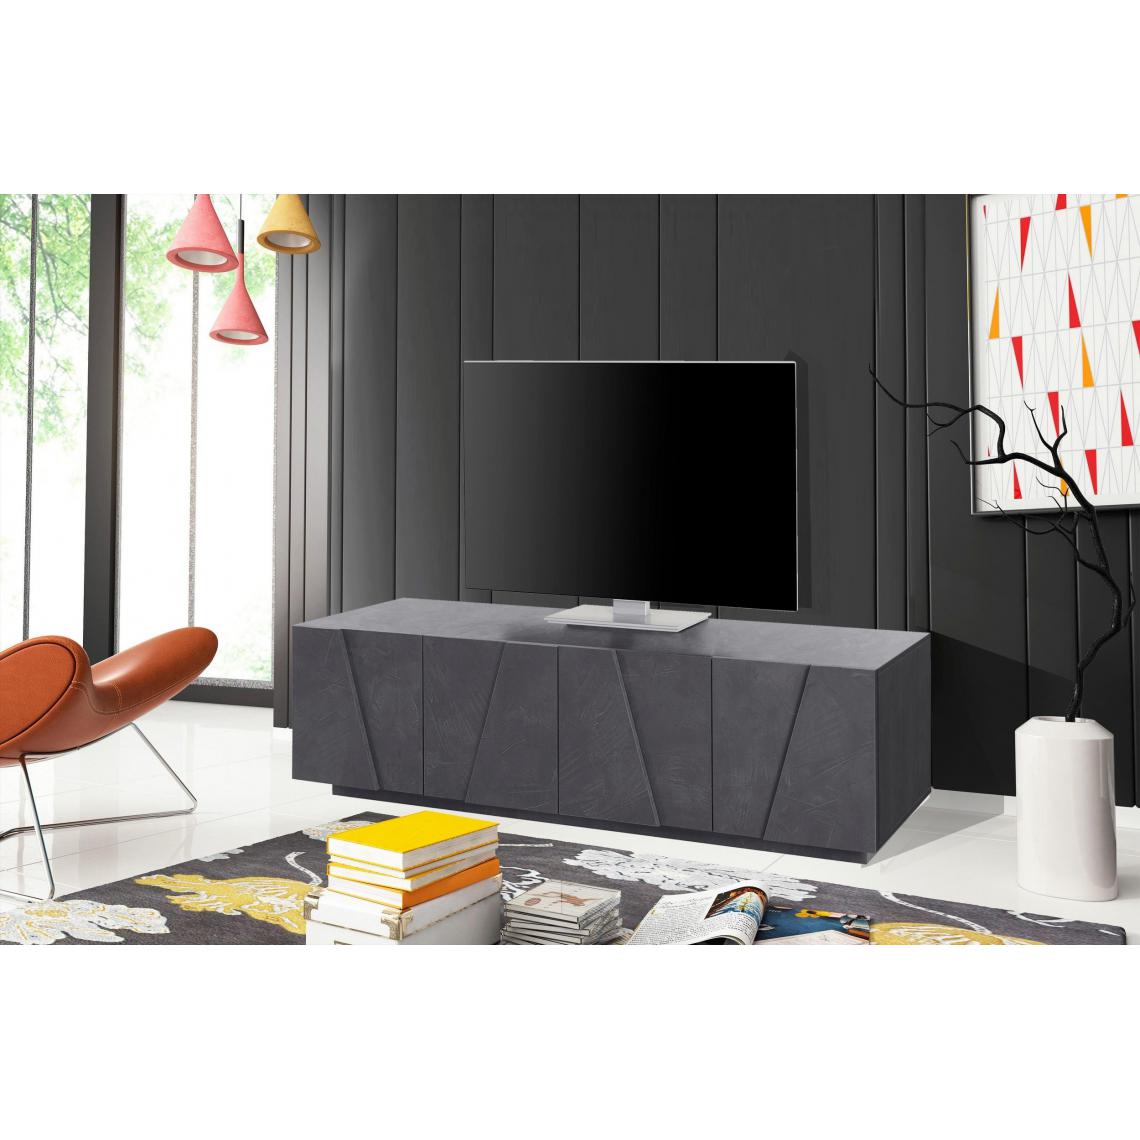 Alter - Meuble TV de salon, Made in Italy, Meuble TV avec 4 portes avec détail, 162x44h46 cm, couleur Gris ardoise - Meubles TV, Hi-Fi